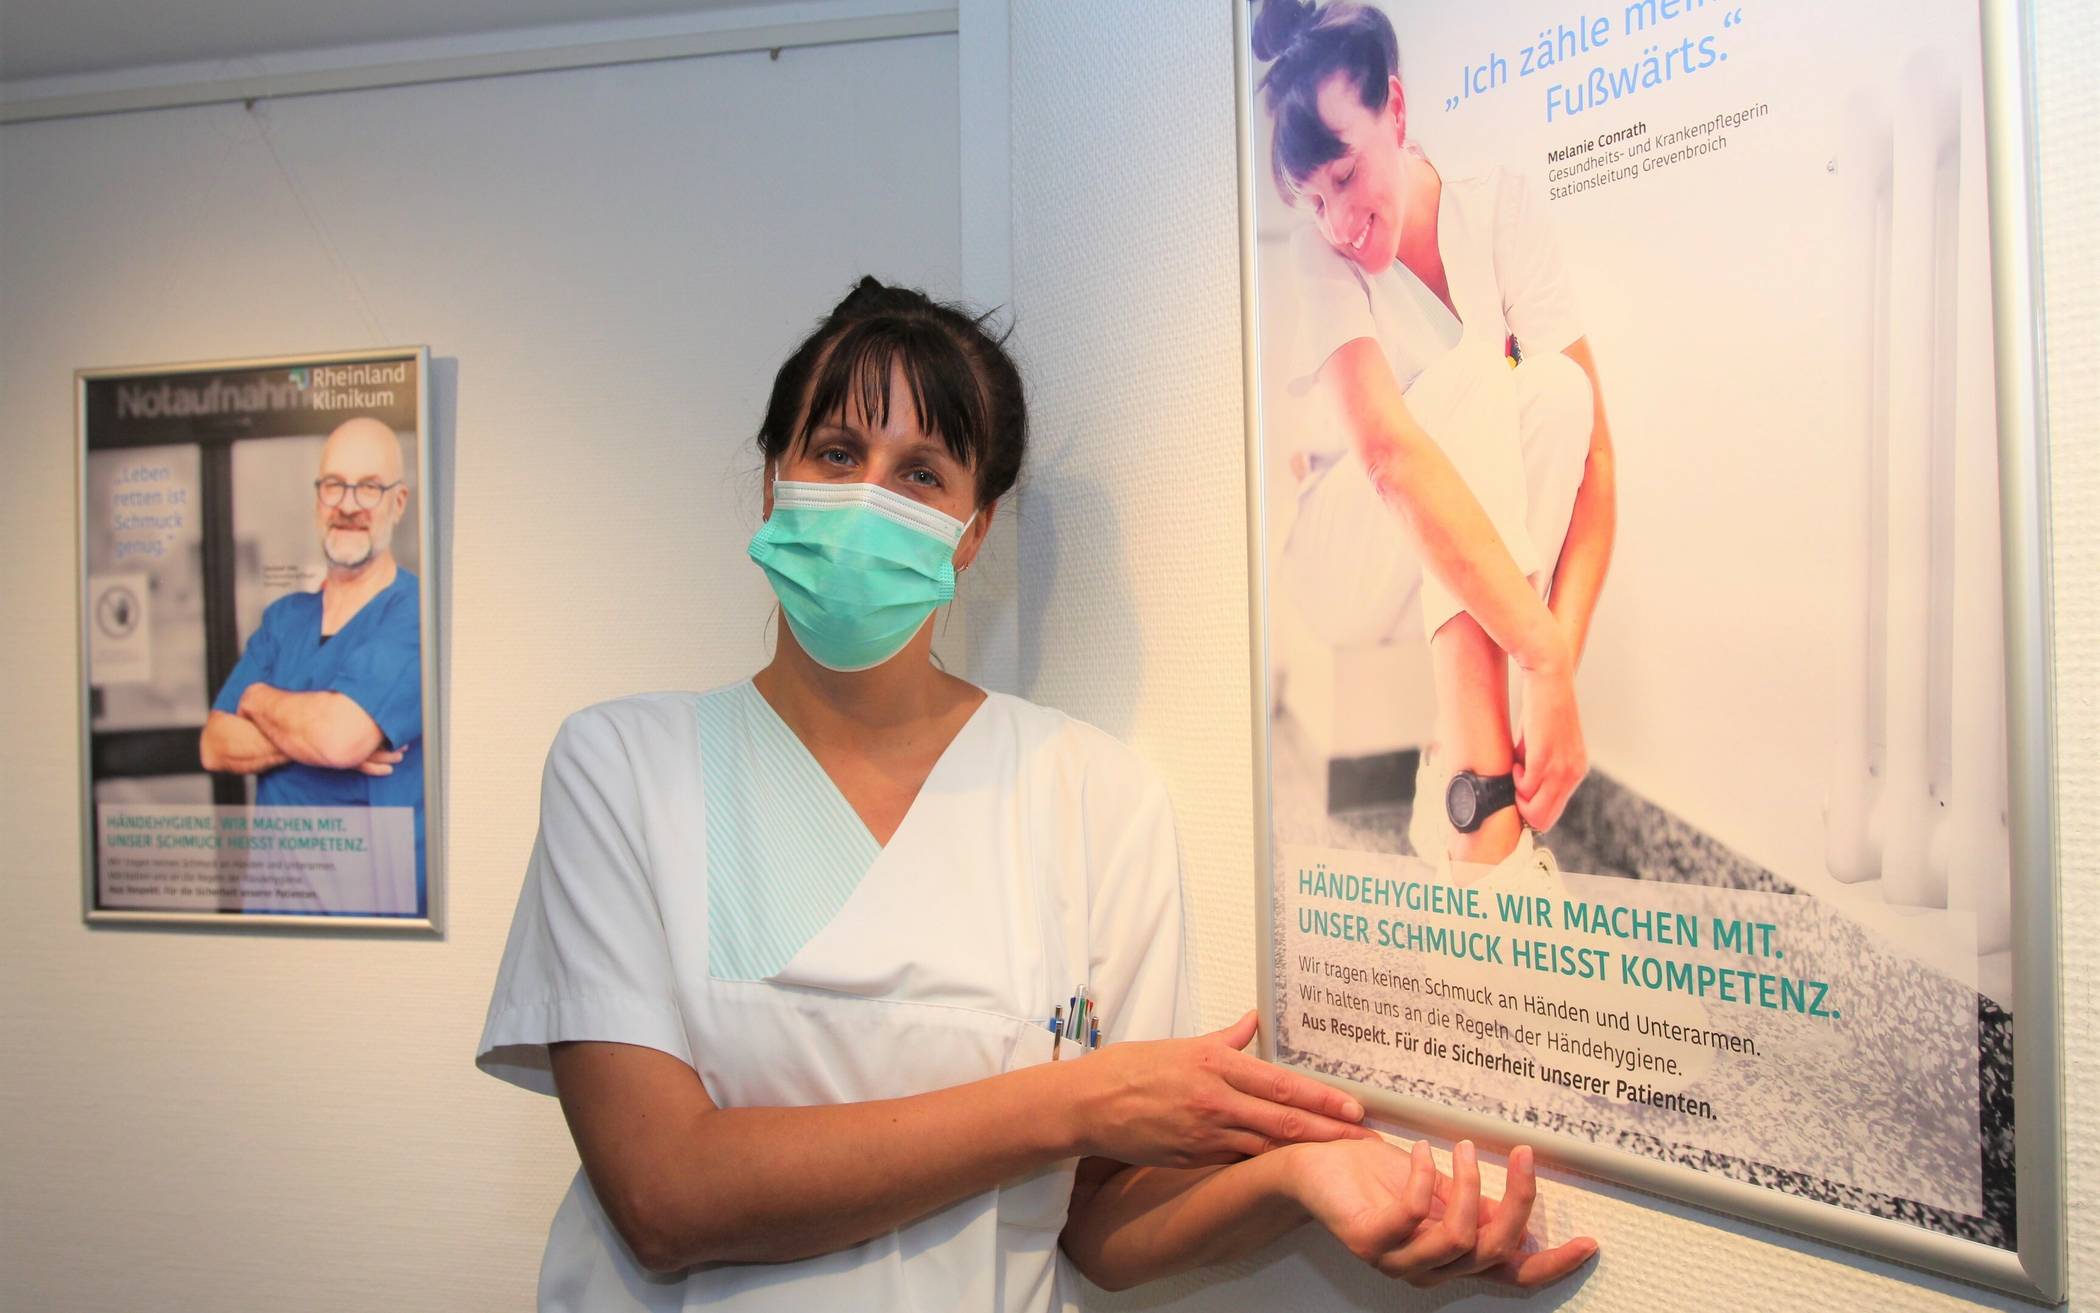  Original und Plakatmotiv: Melanie Conrath, stellvertretende Stationsleitung, ist eine von insgesamt zwölf Mitarbeitern des "Rheinland Klinikums", die sich als Fotomodell für die Plakataktion der Krankenhaus-Hygiene zur Verfügung stellten. 